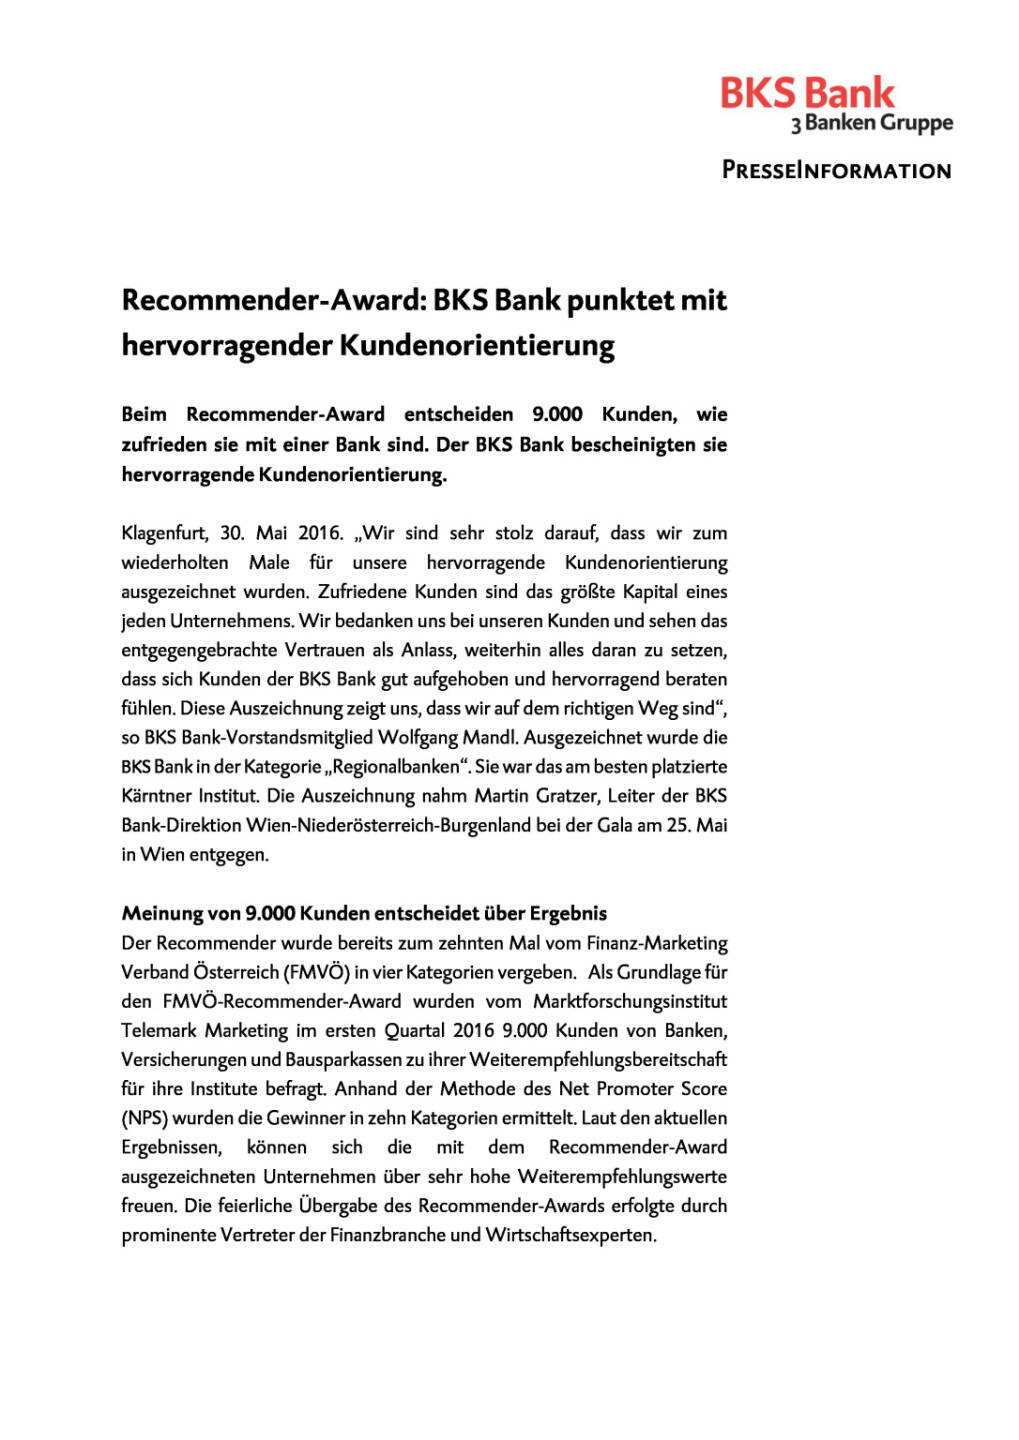 BKS Bank: Auszeichnung für hervorragende Kundenorientierung , Seite 1/2, komplettes Dokument unter http://boerse-social.com/static/uploads/file_1142_bks_bank_auszeichnung_fur_hervorragende_kundenorientierung.pdf